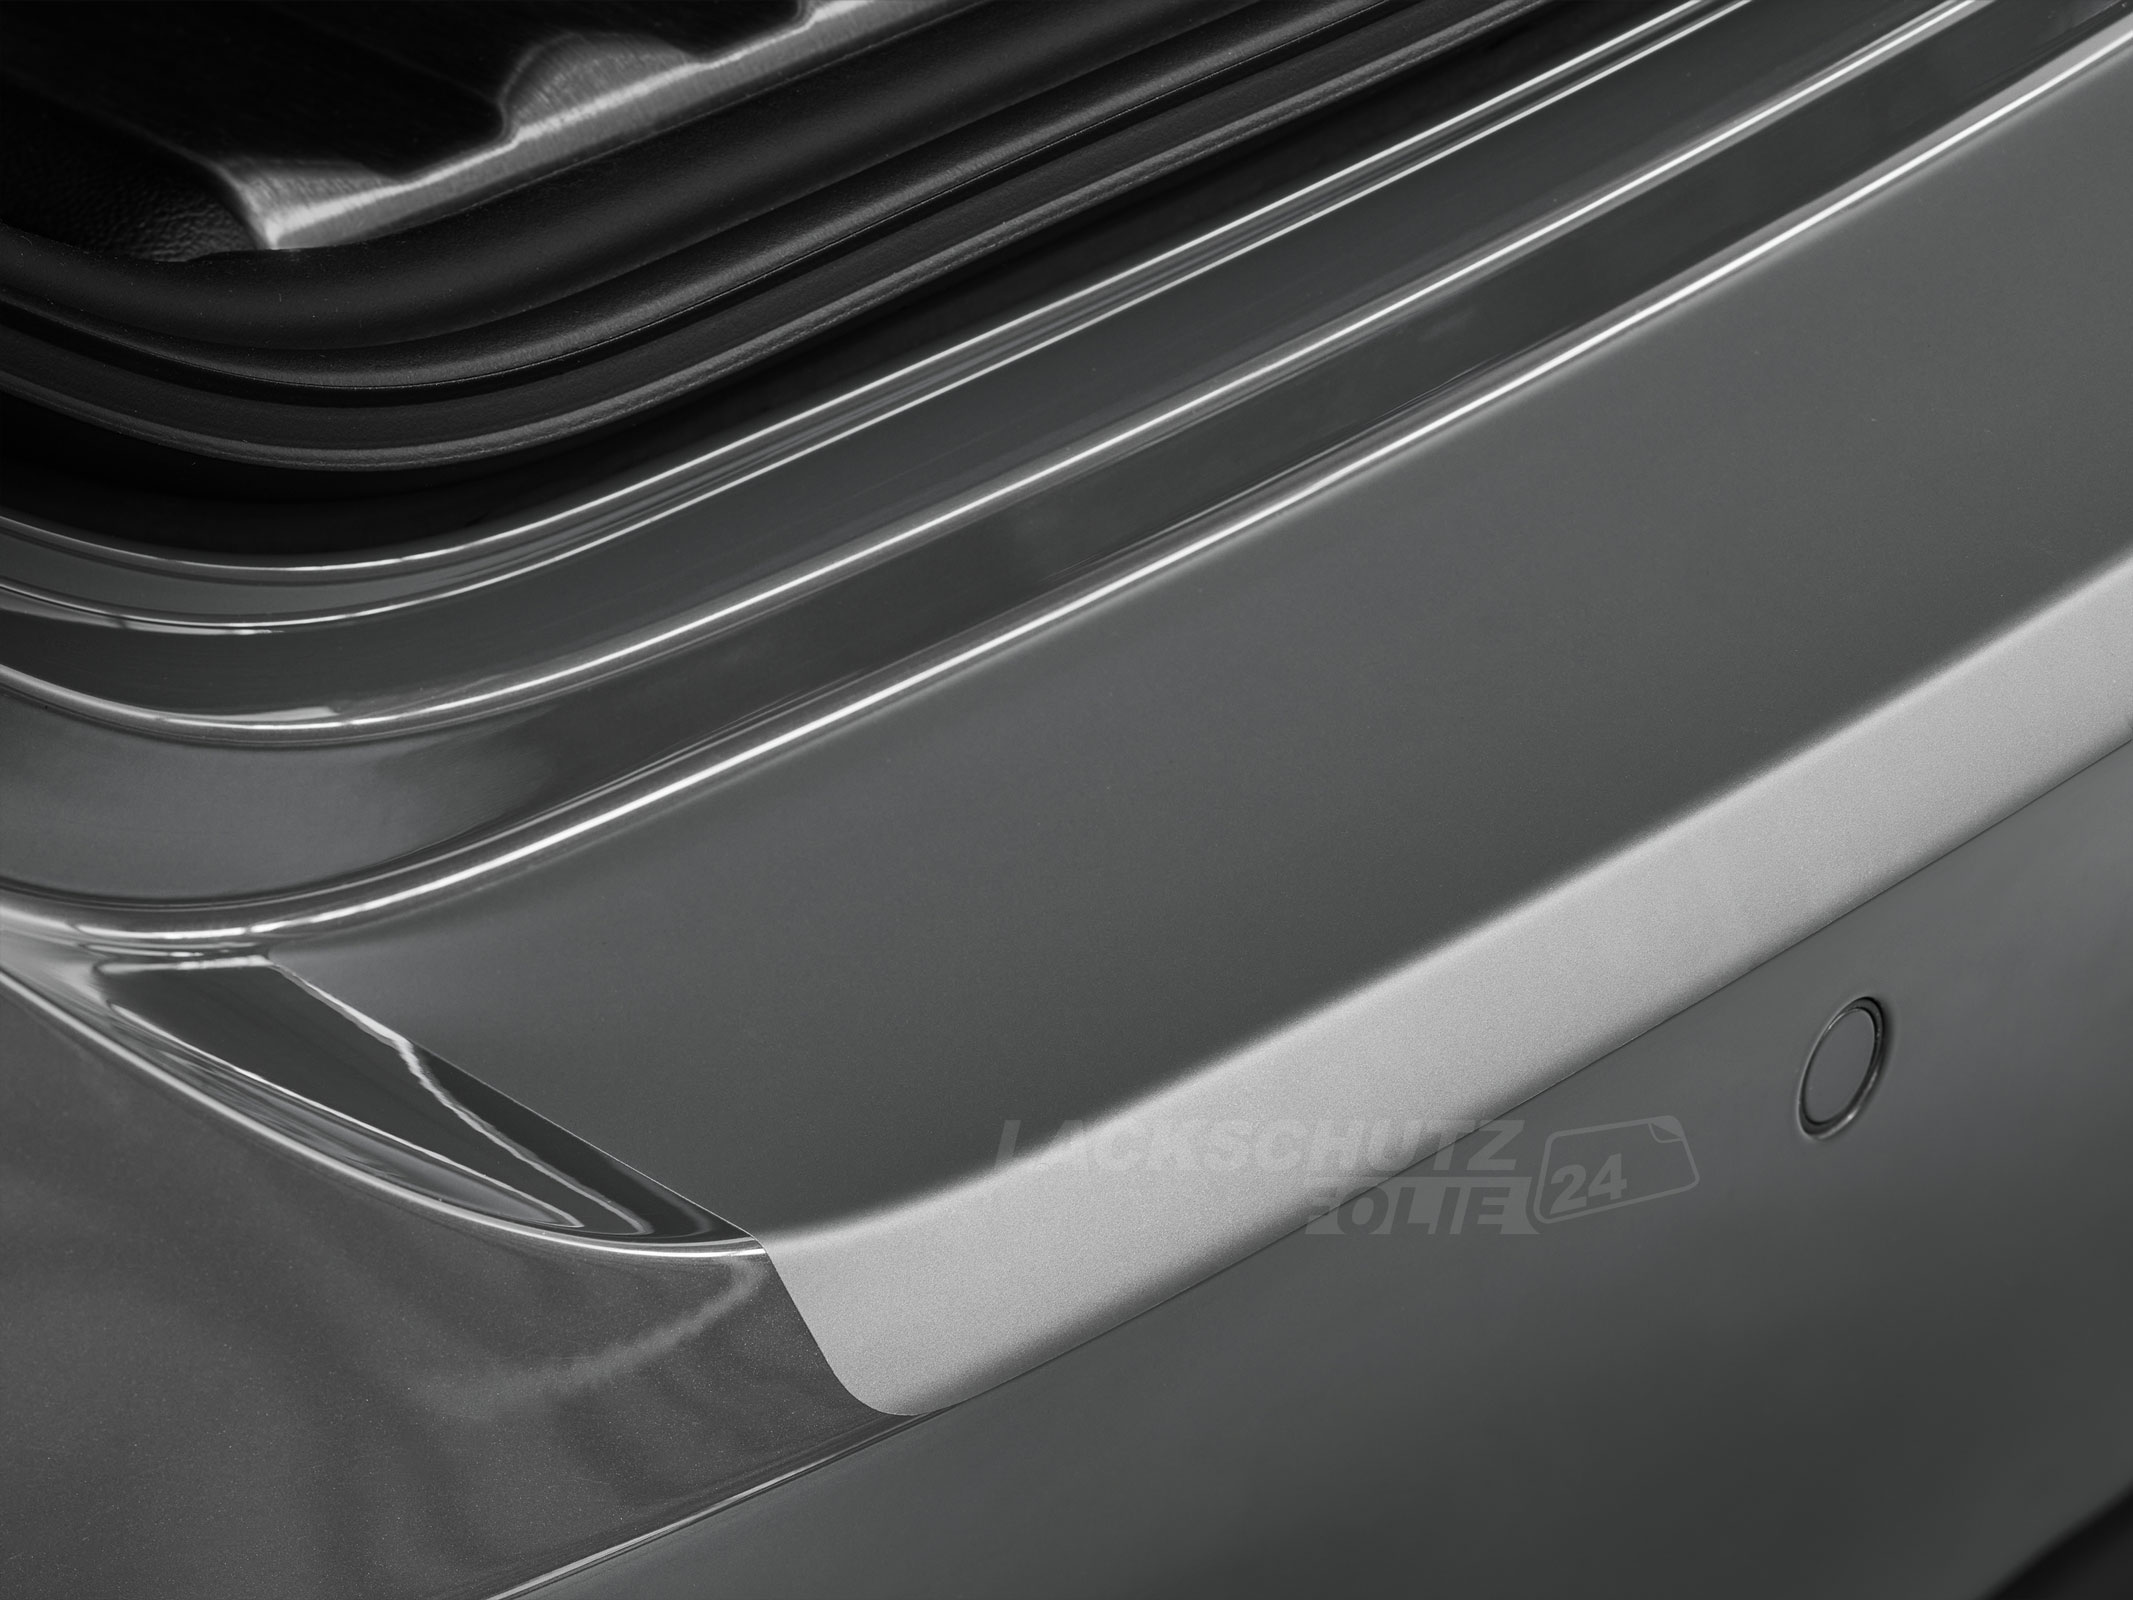 Ladekantenschutzfolie - Transparent Glatt MATT 110 µm stark  für BMW 3er Limousine Typ F30, BJ 2012-03/2019